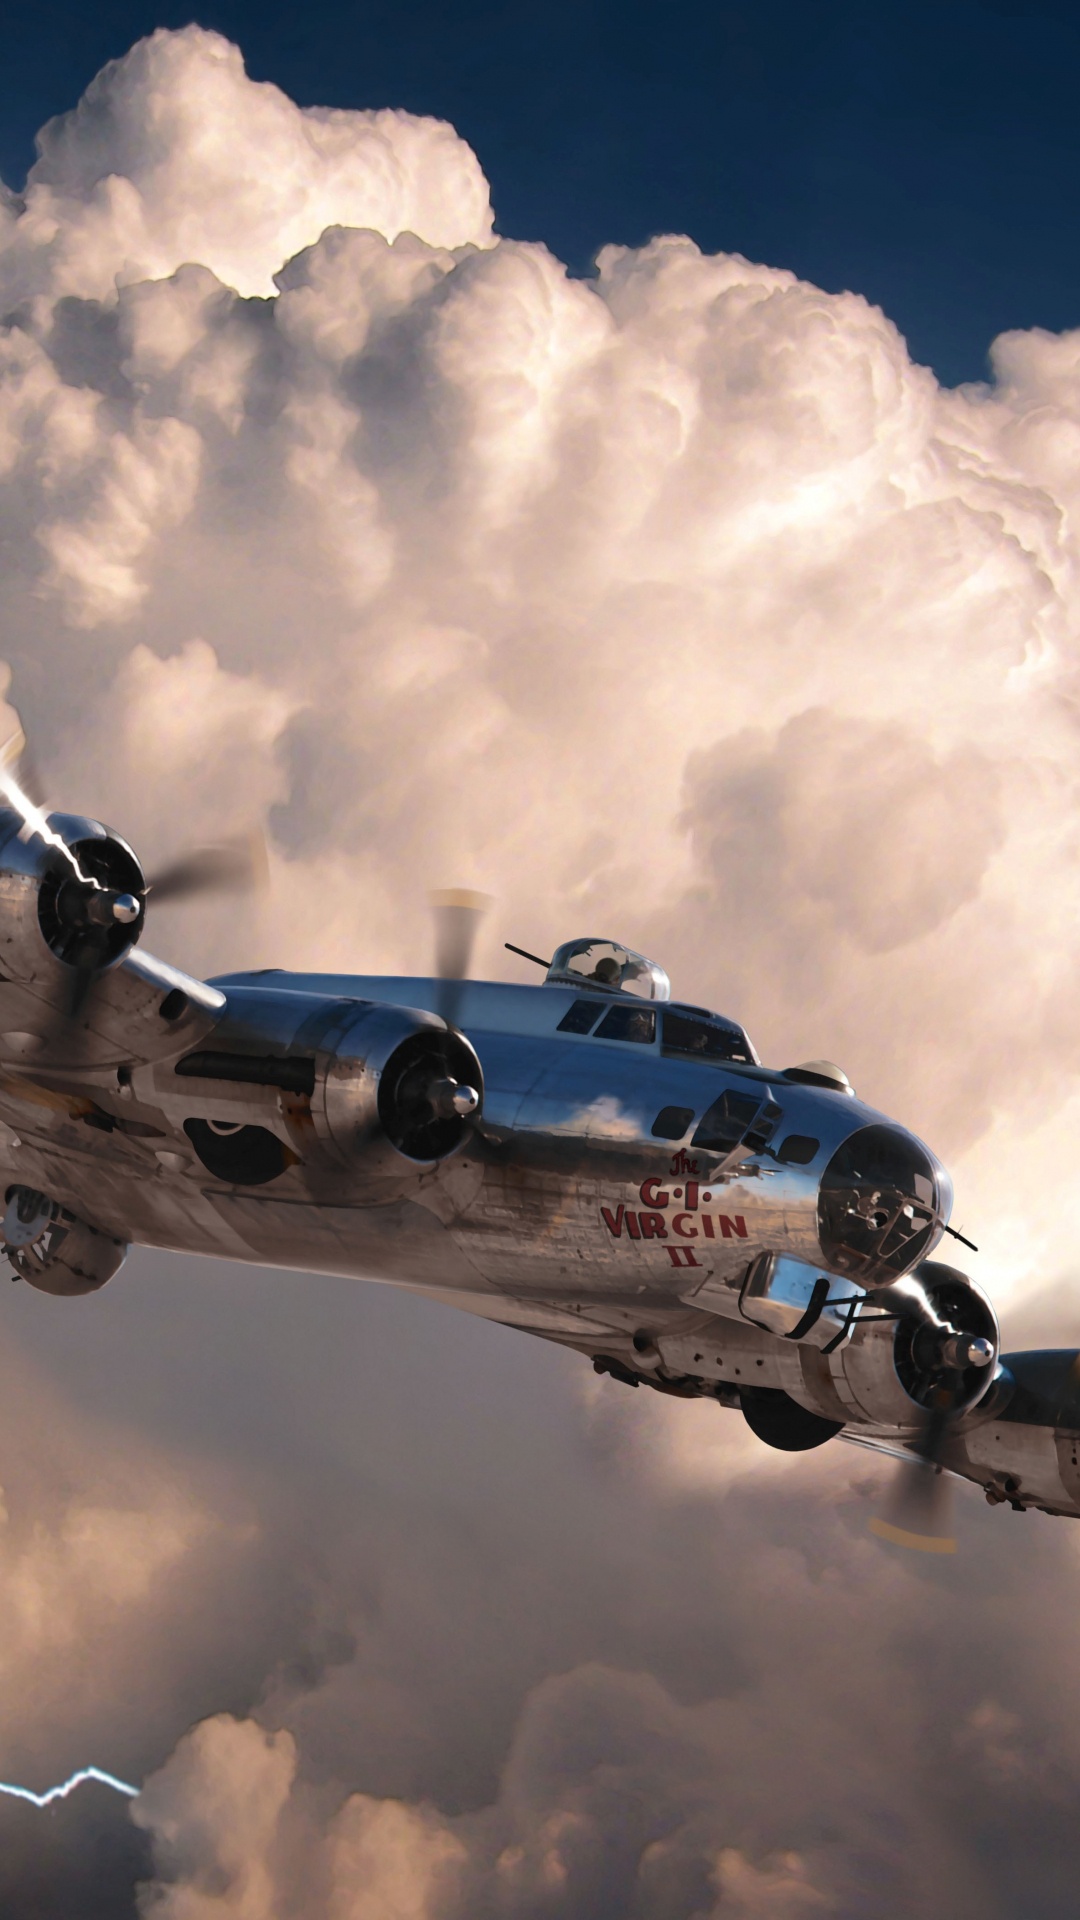 第二次世界大战, 世界大战, 波音公司b-17飞行堡垒, 波音公司B-29超级空中堡垒, 航空 壁纸 1080x1920 允许